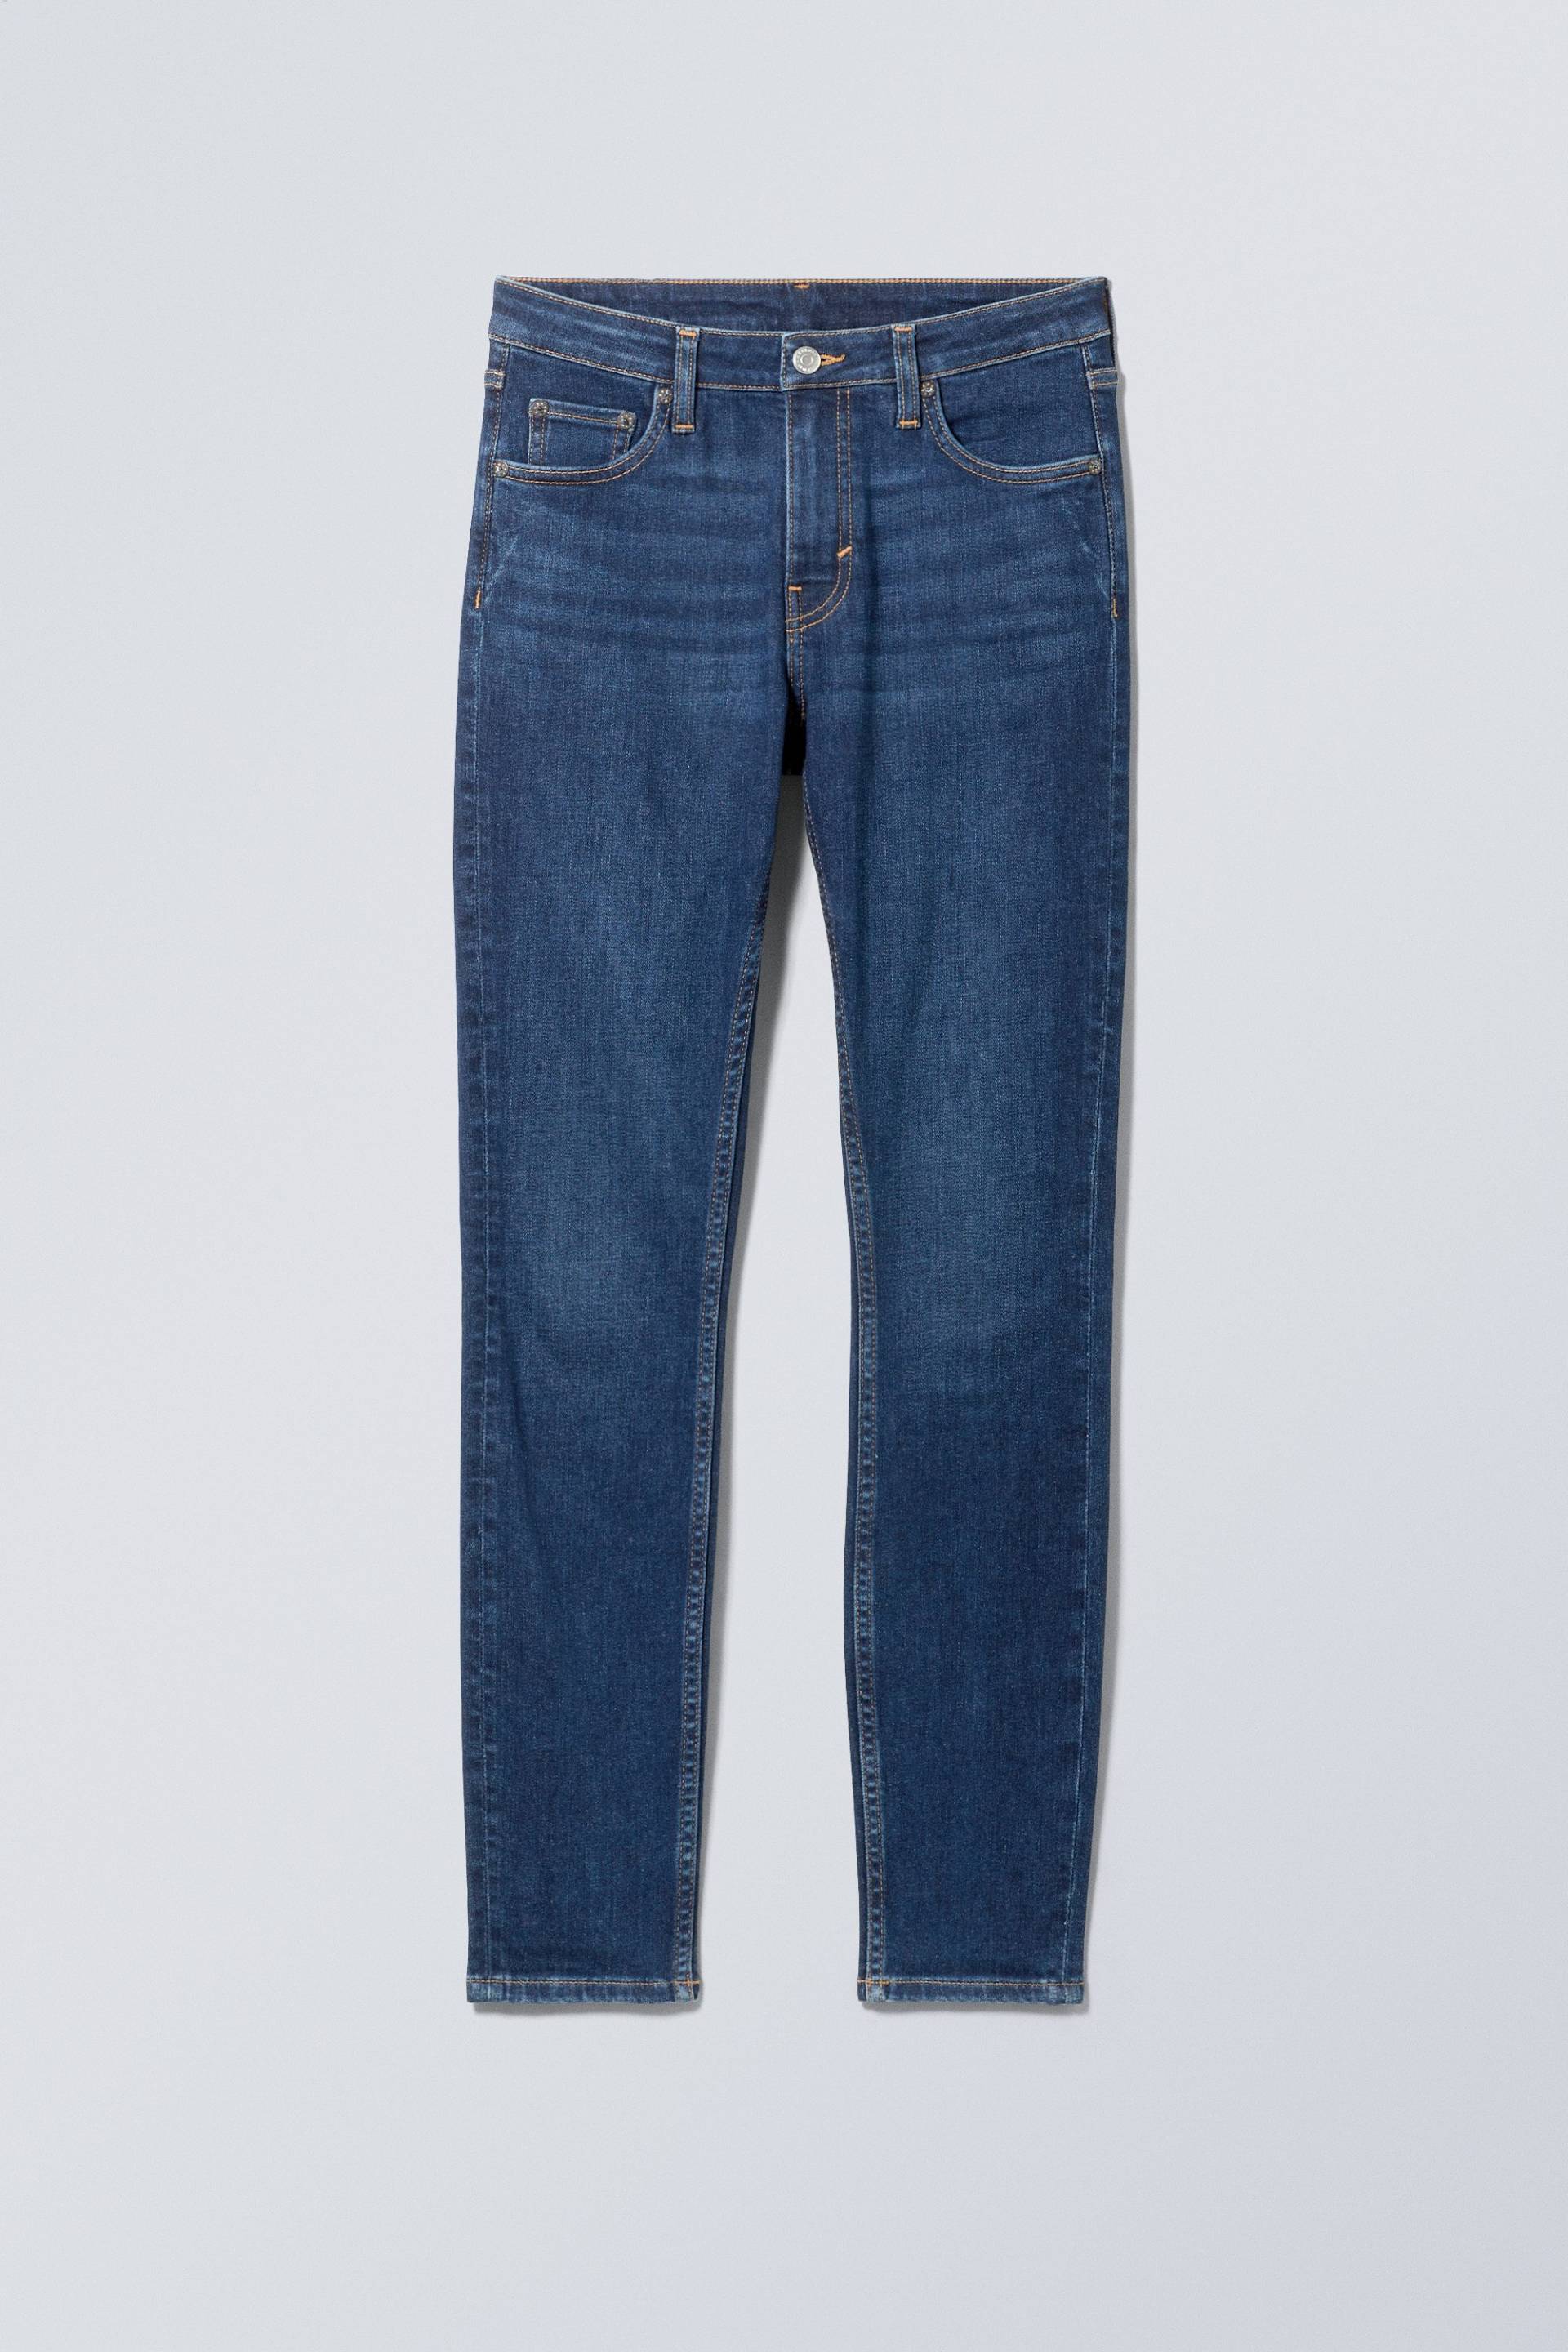 Weekday Skinny Jeans Spare mit mittelhohem Bund Mittelblau in Größe 23/30. Farbe: Mid blue von Weekday